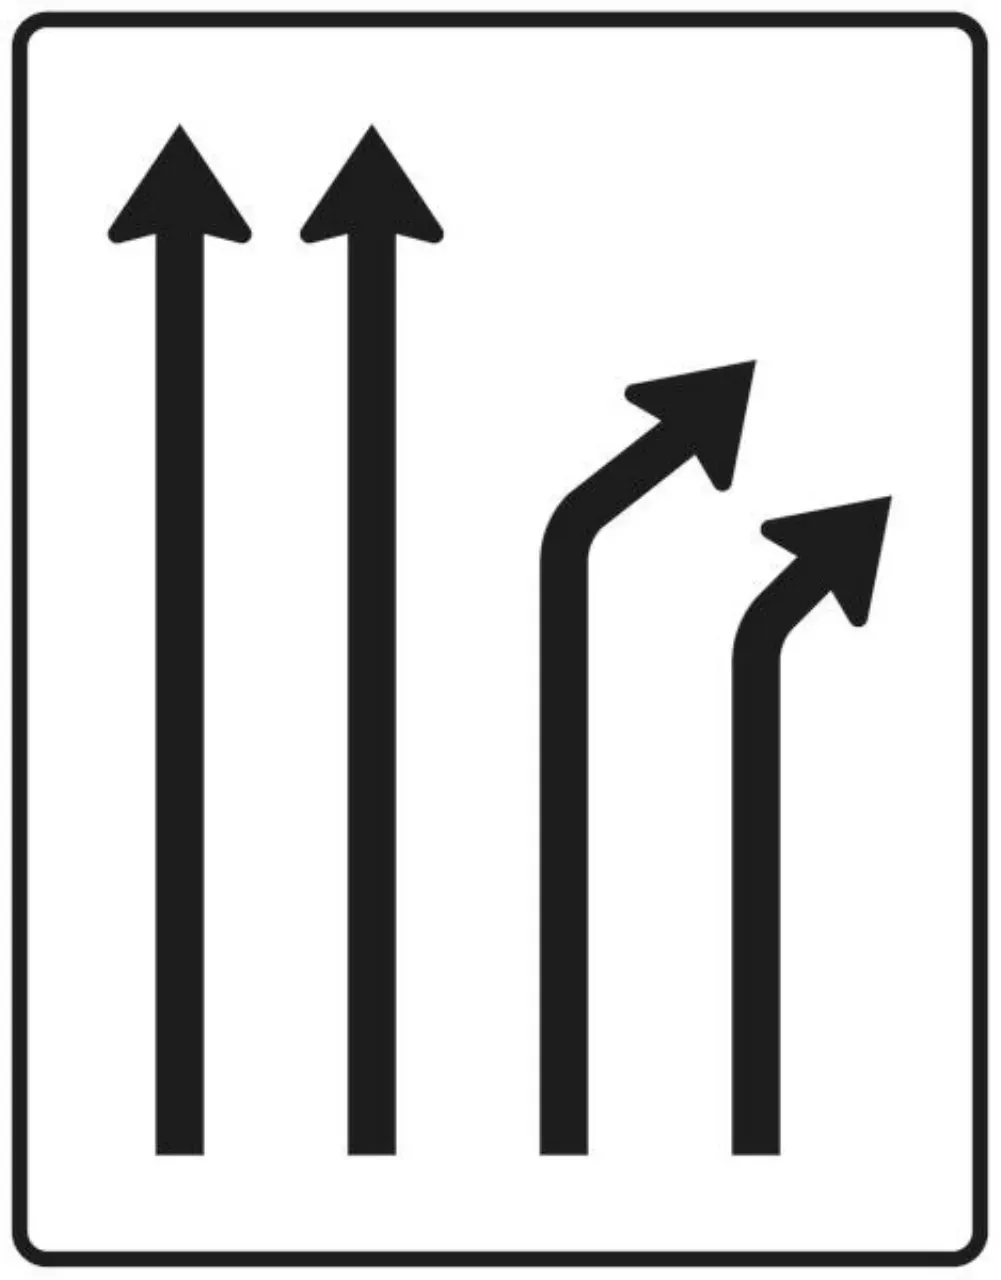 Verkehrszeichen 533-22 Trennungstafel - ohne Gegenverkehr - zweistreifig durchgehend und zweistreifig rechts ab - 1600x1250 3 mm RA1